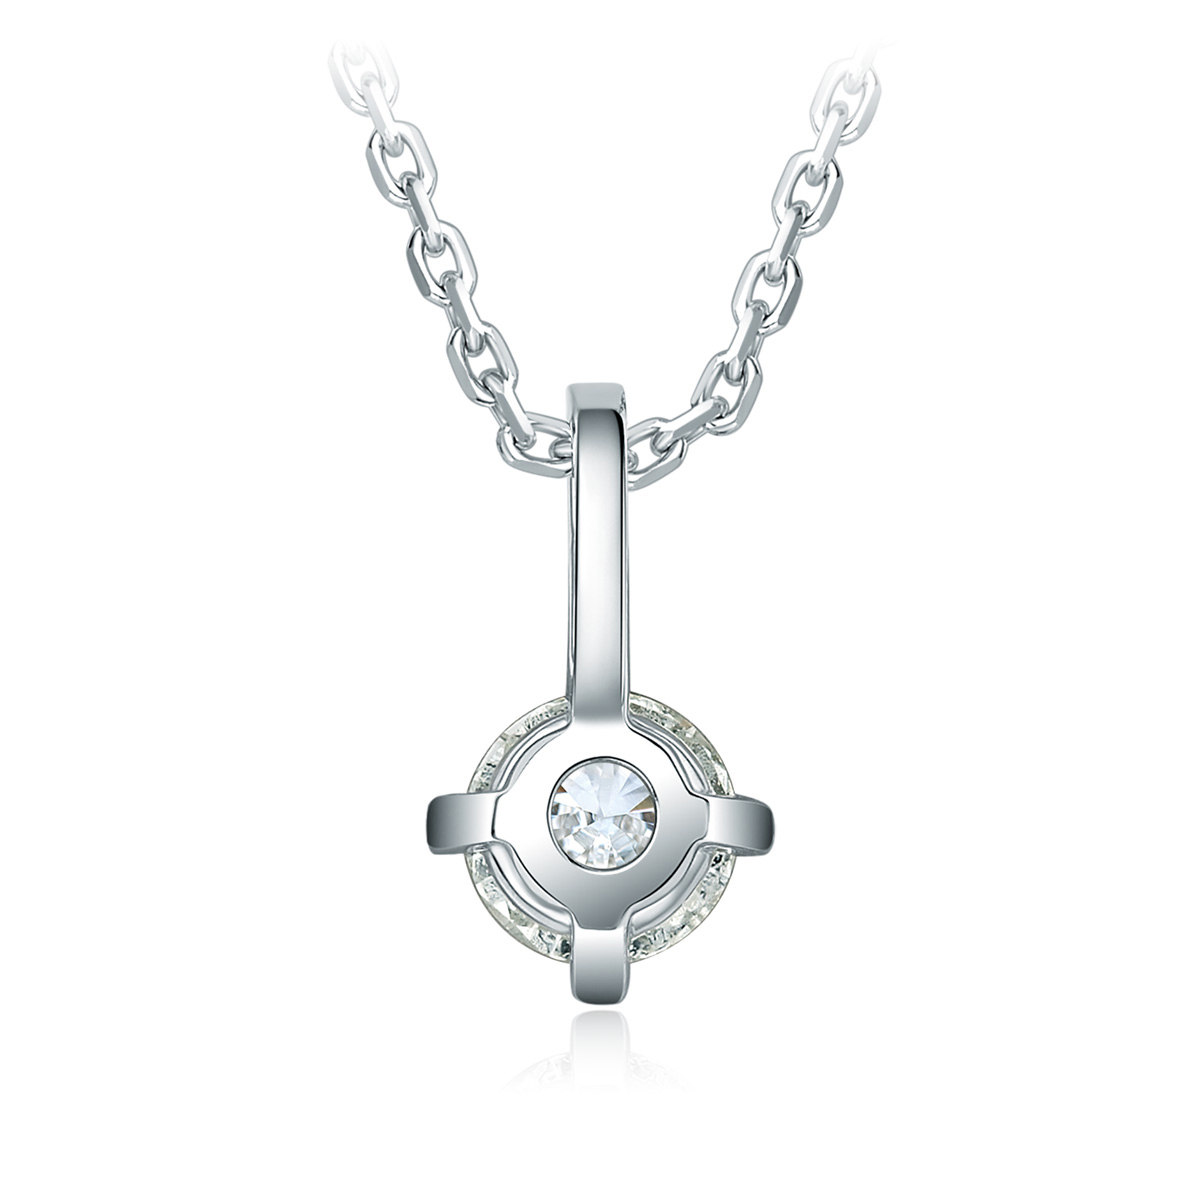 铂金镶钻项链，小号。 | Tiffany & Co.